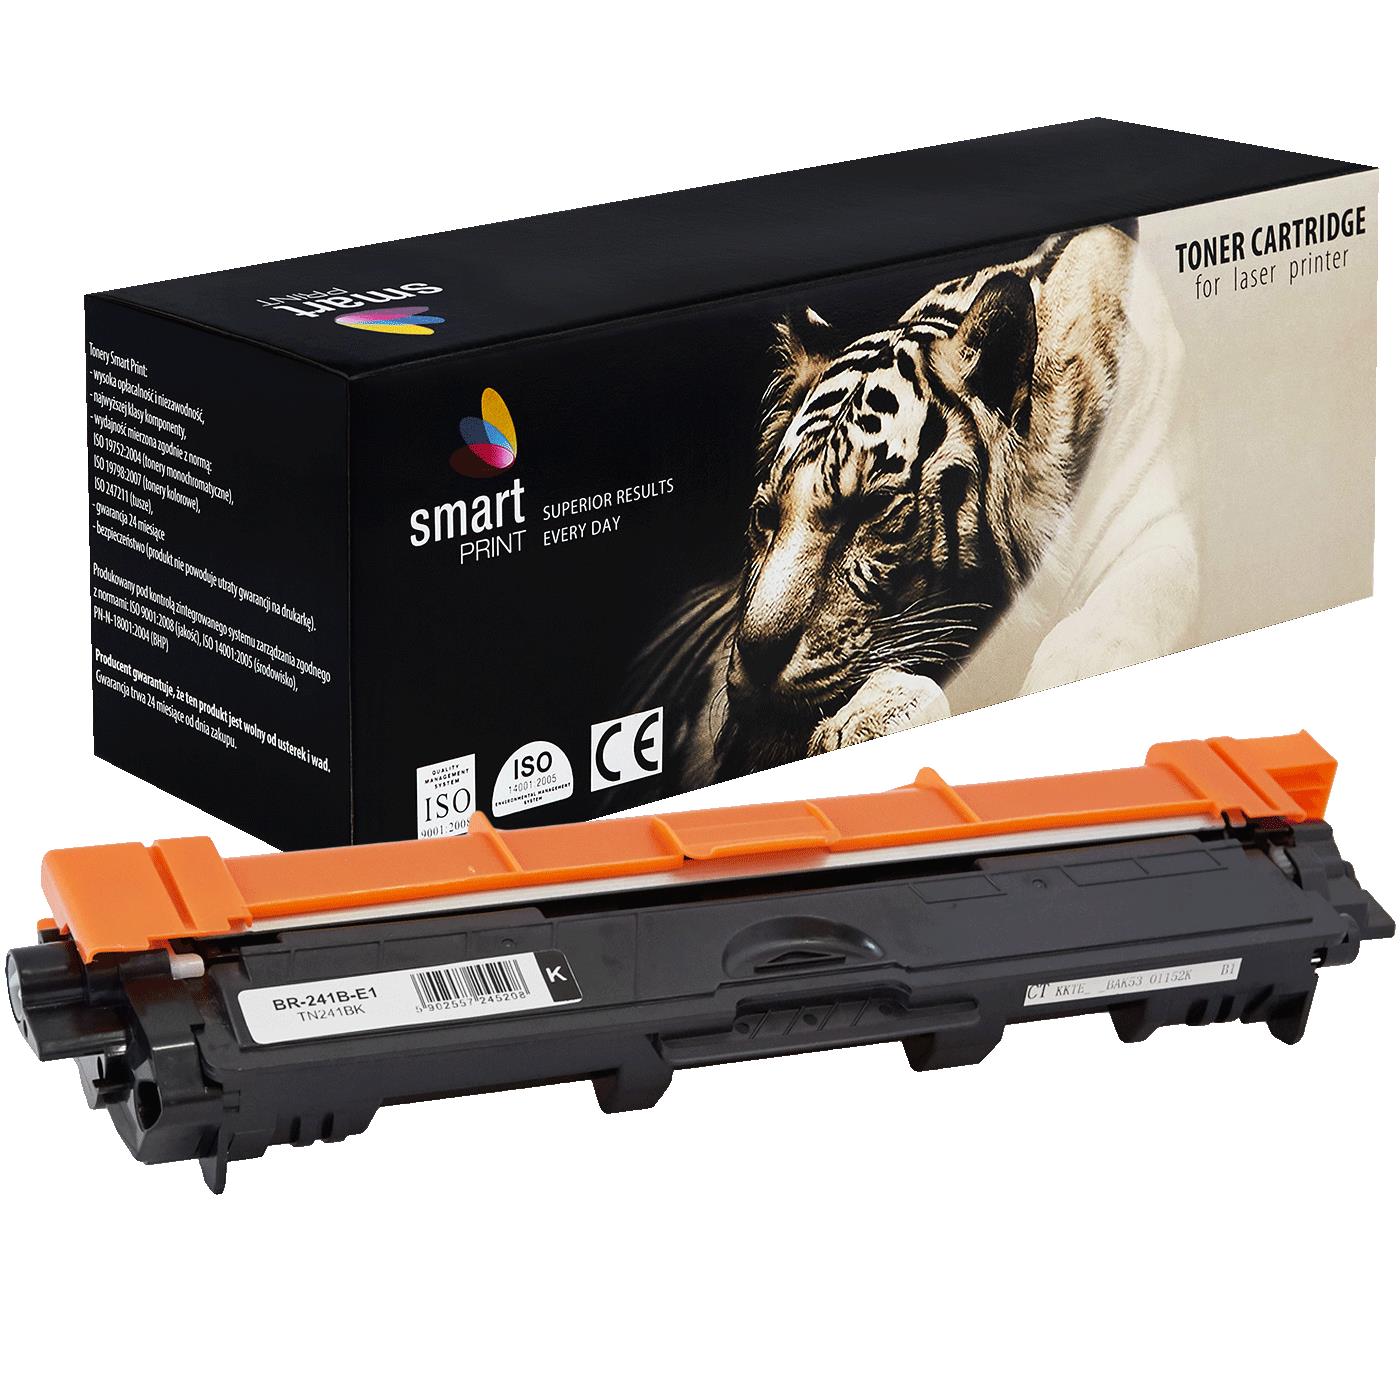 съвместима тонер касета за принтери и печатащи устройства на Brother 9340CDW Toner BR-241B | TN241BK / TN-241 / TN245. Ниски цени, прецизно изпълнение, високо качество.